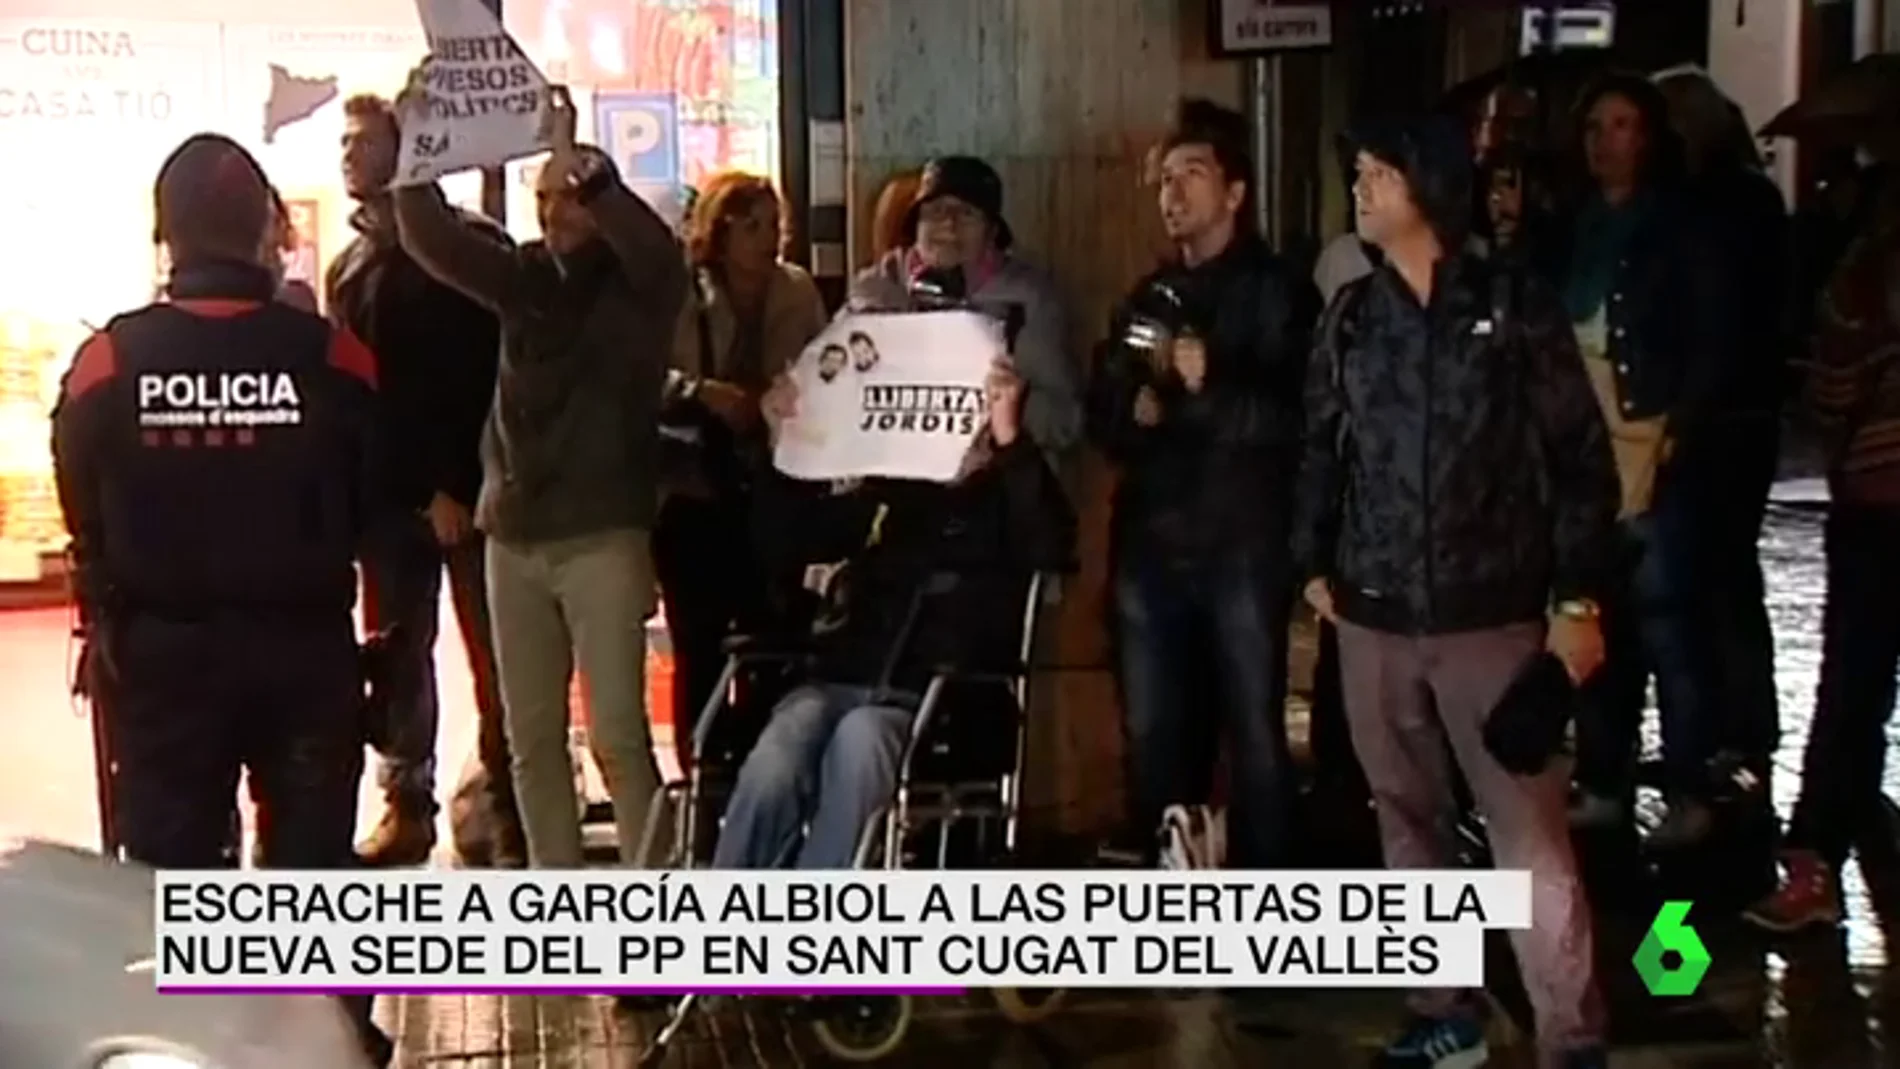 VÍDEO DE REEMPLAZO | Xavier García Albiol sufre un escrache tras inaugurar una sede del Partido Popular